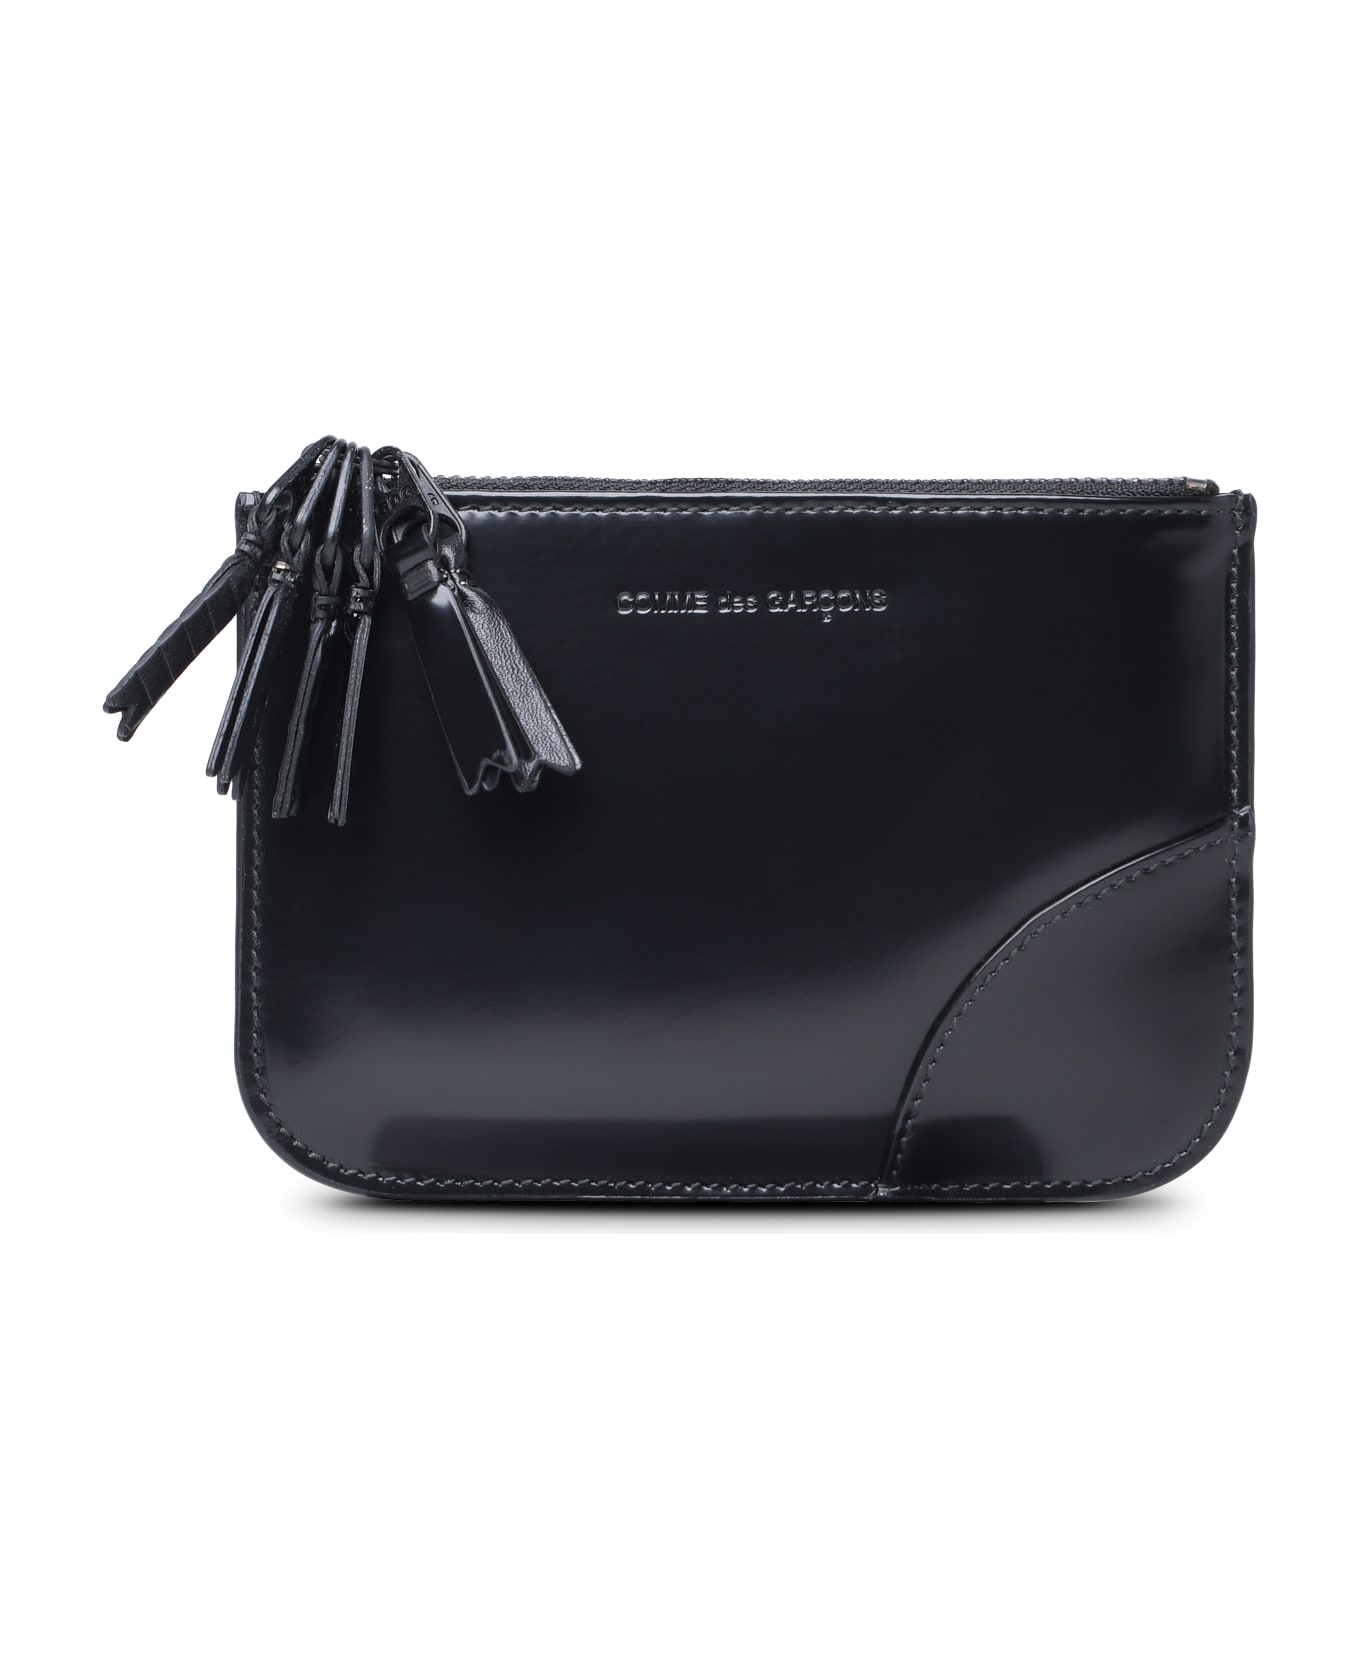 Comme des Garçons Wallet 'medley' Black Leather Card Holder - Black 財布